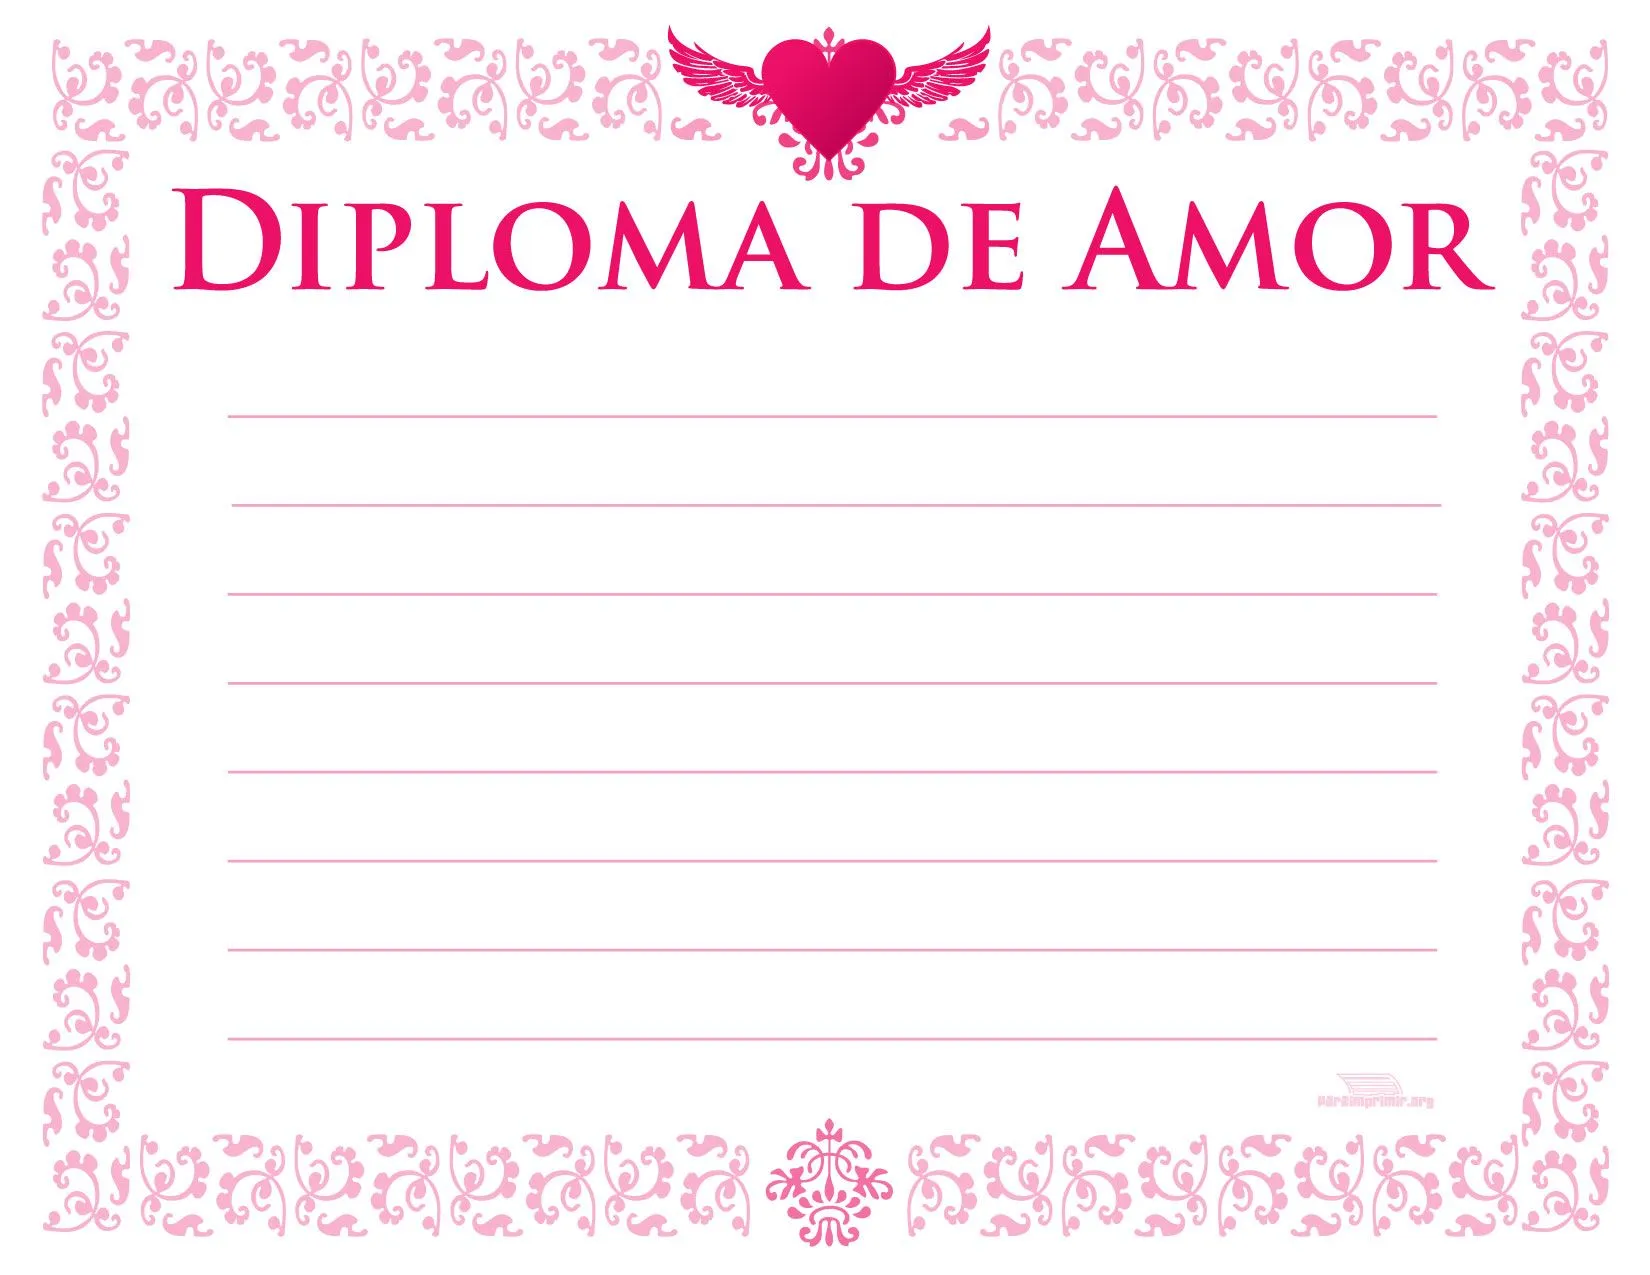 Diploma de amor para imprimir